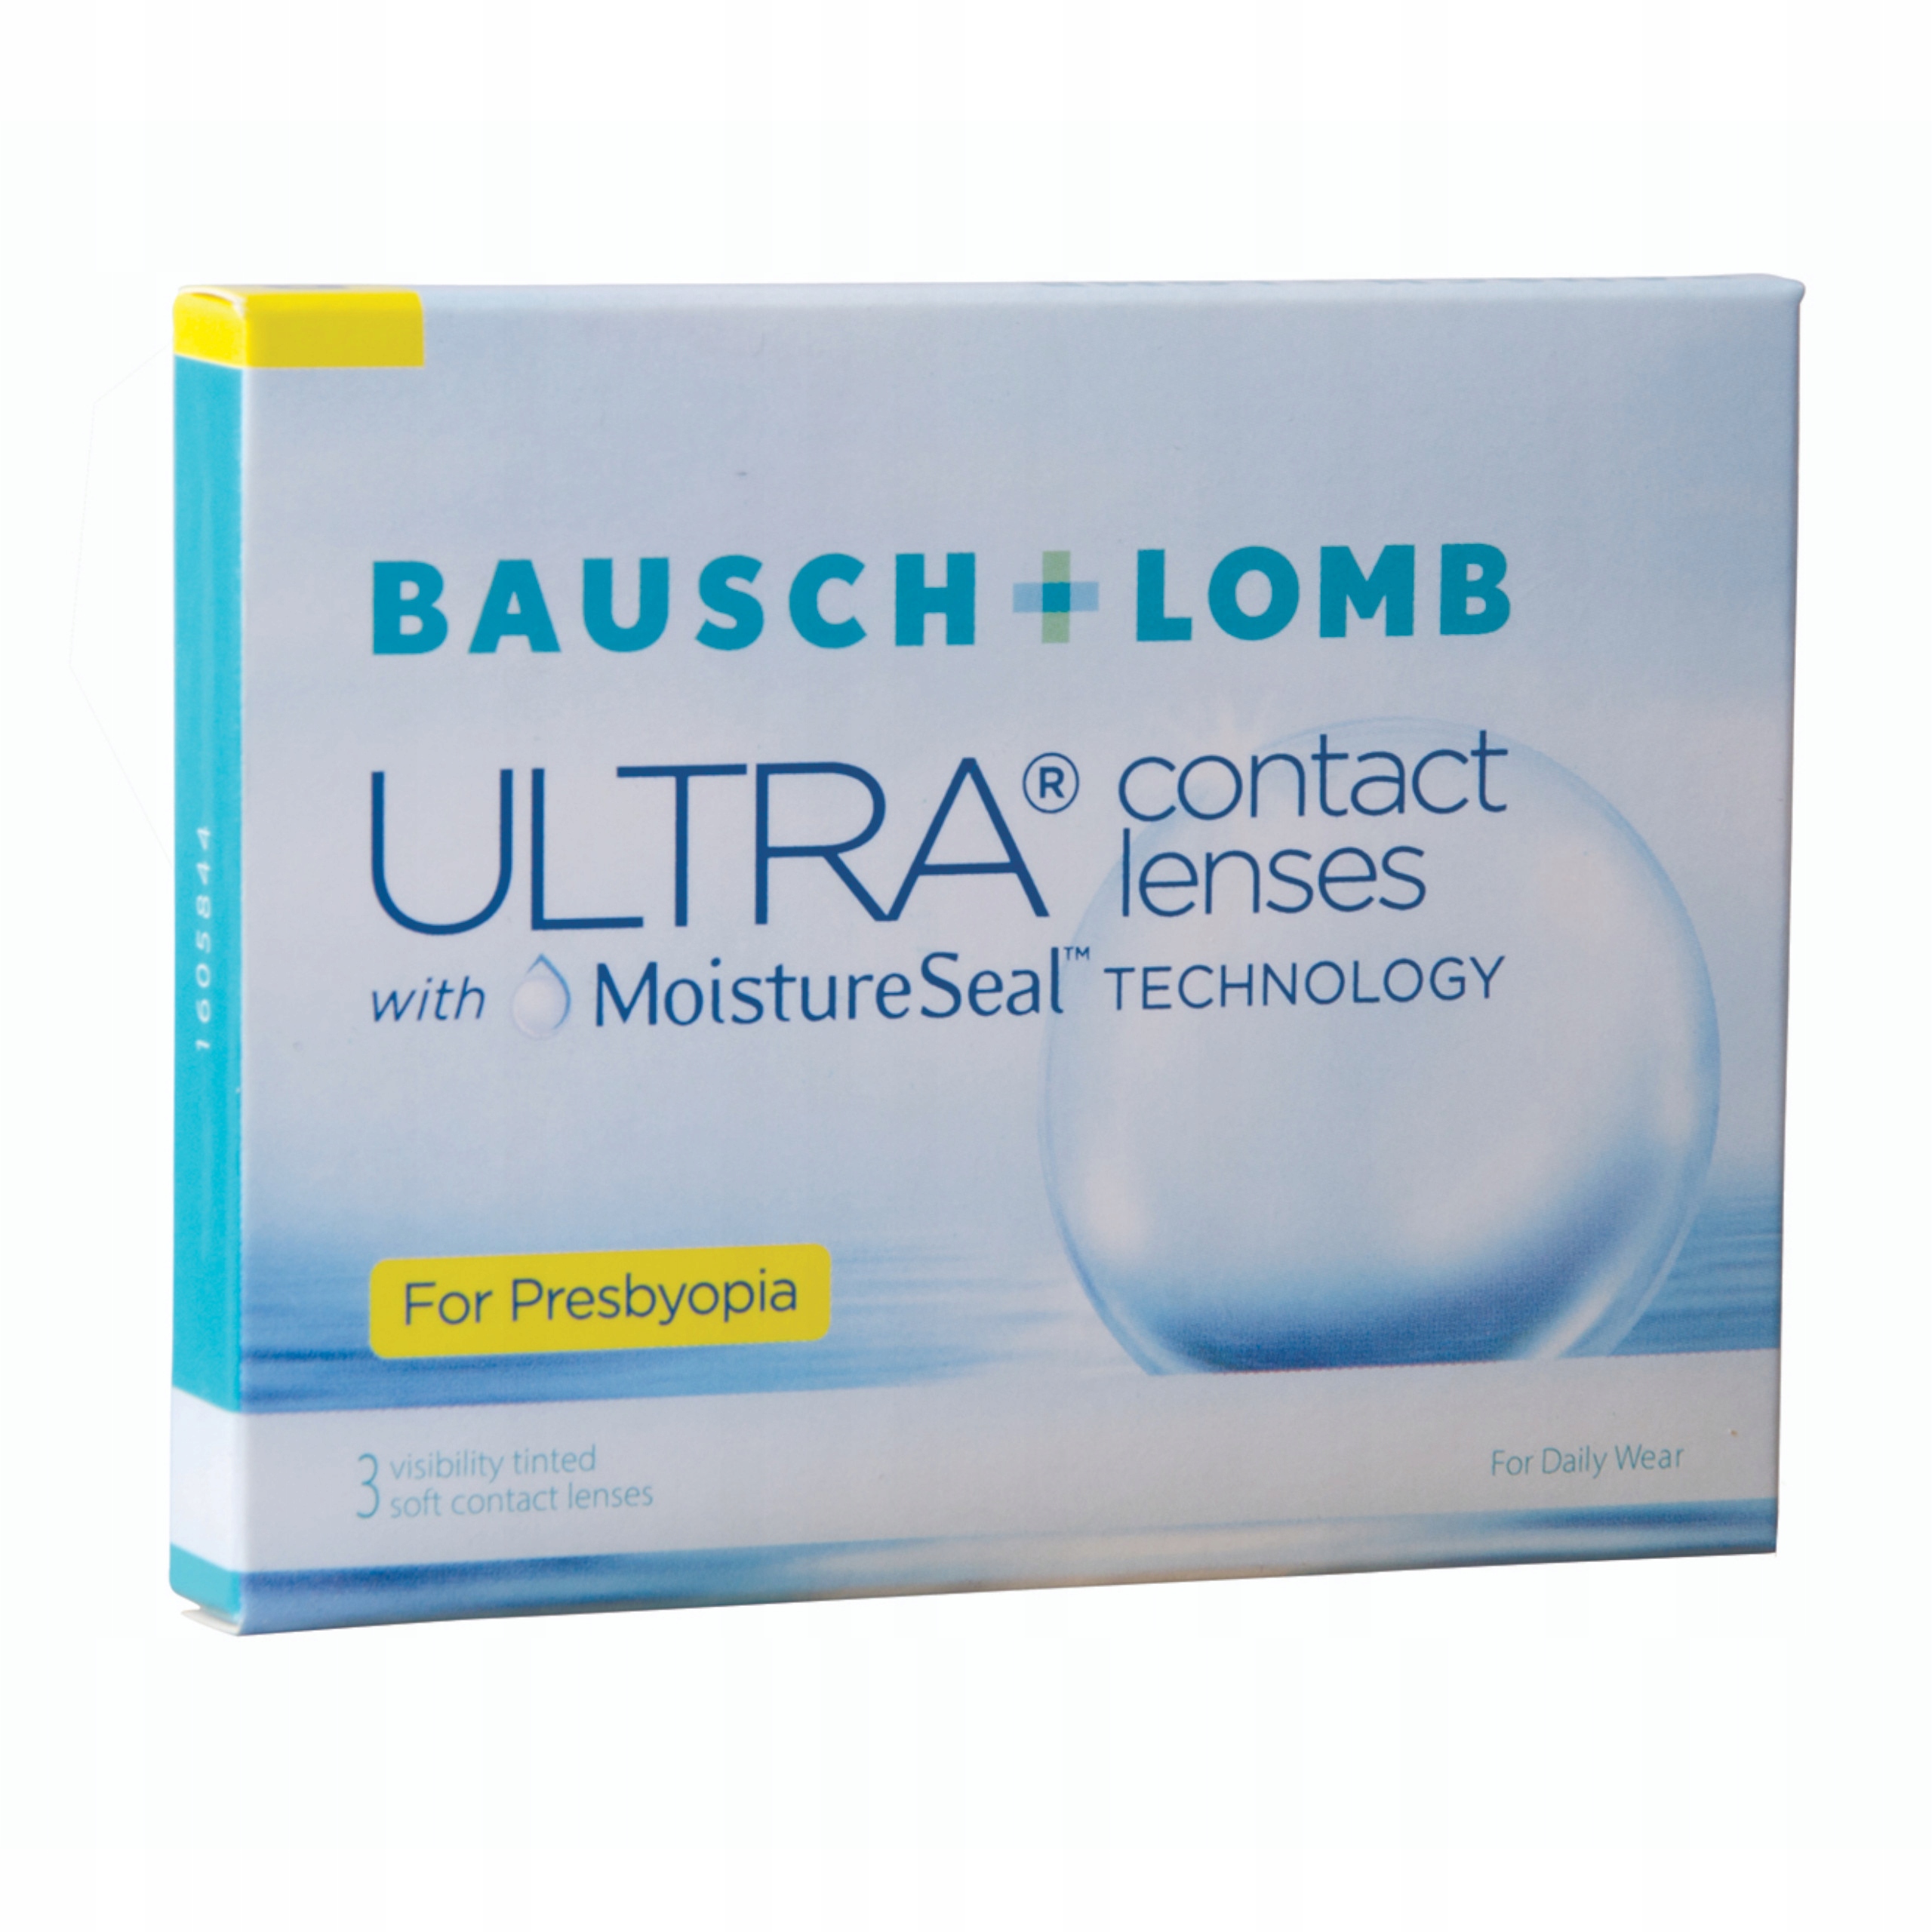 Линзы ультра. Контактные линзы Bausch Lomb Ultra 6 шт. Bausch + Lomb контактные линзы Ultra, 3 шт. Линзы Bausch Lomb Ultra 1 шт. Bausch Lomb 3 шт линзы.